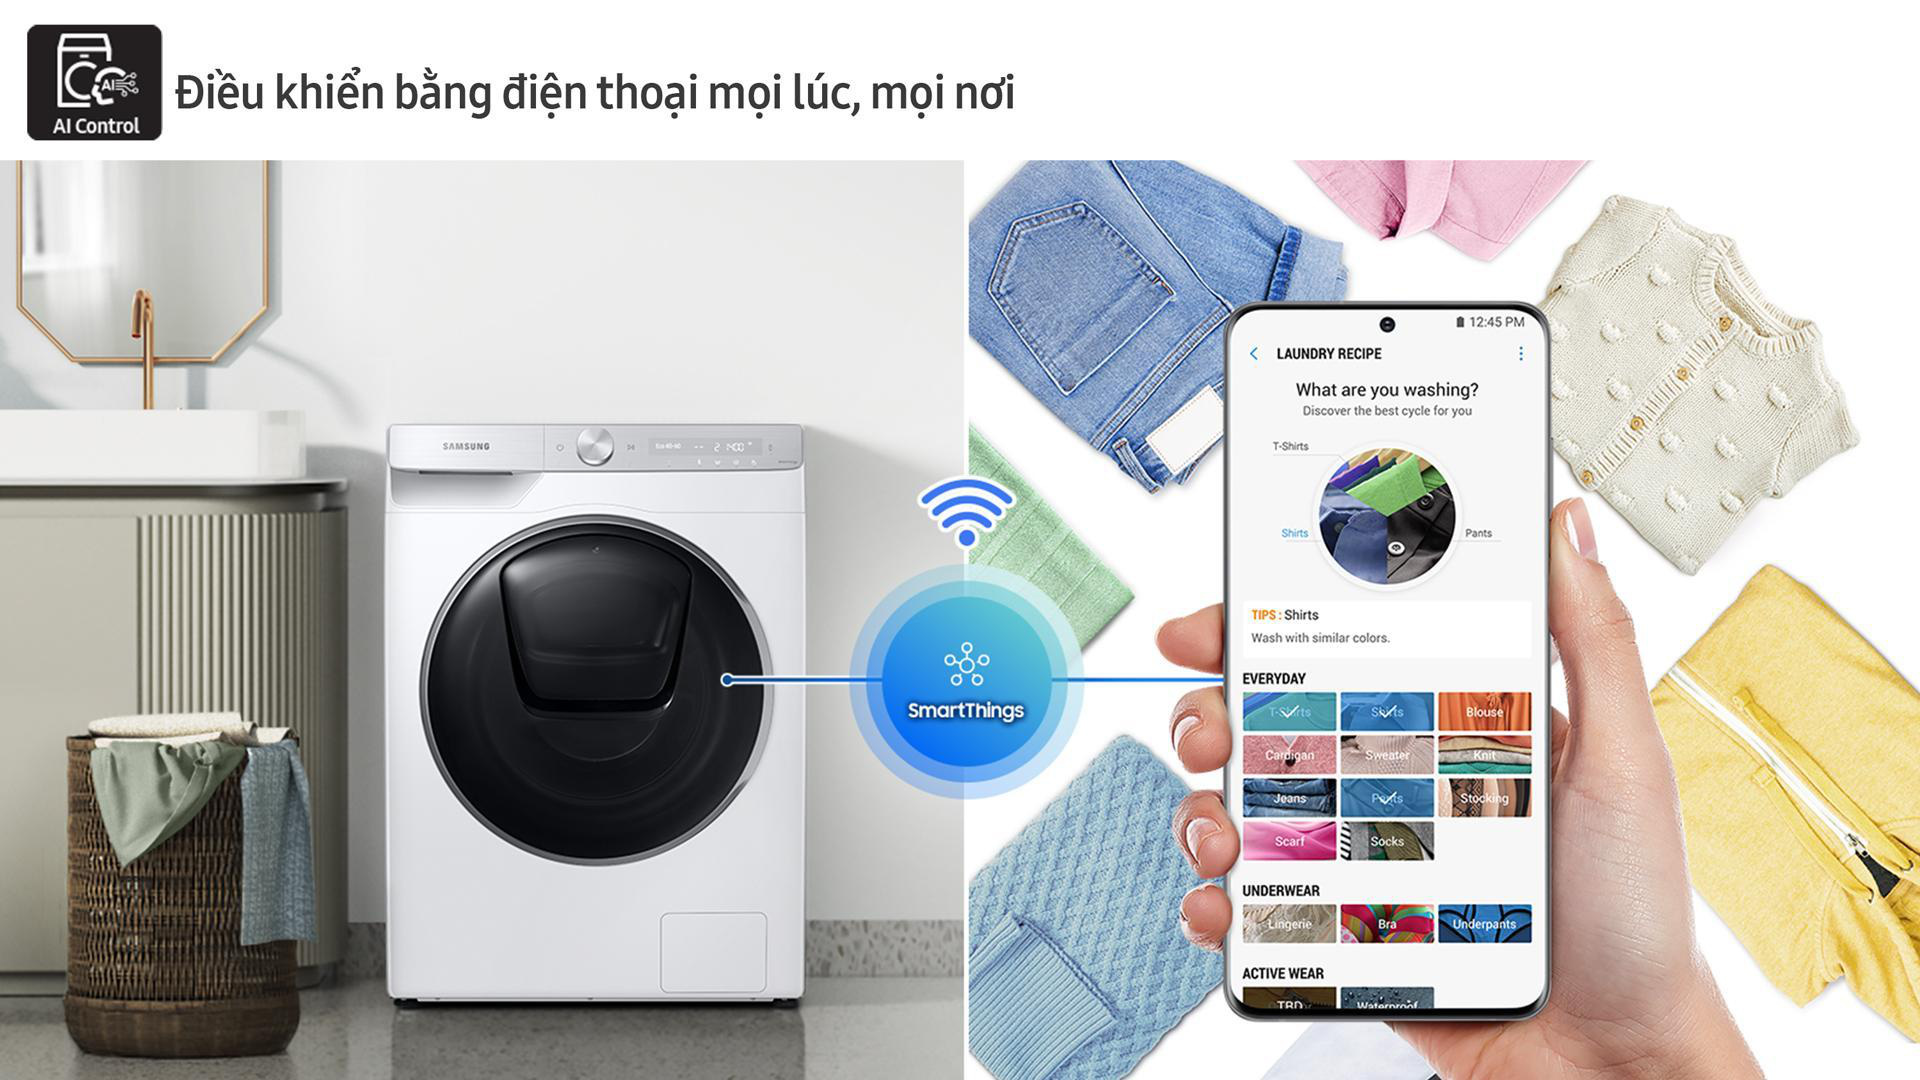 Công nghệ trí tuệ nhân tạo trong dòng máy giặt của Samsung.